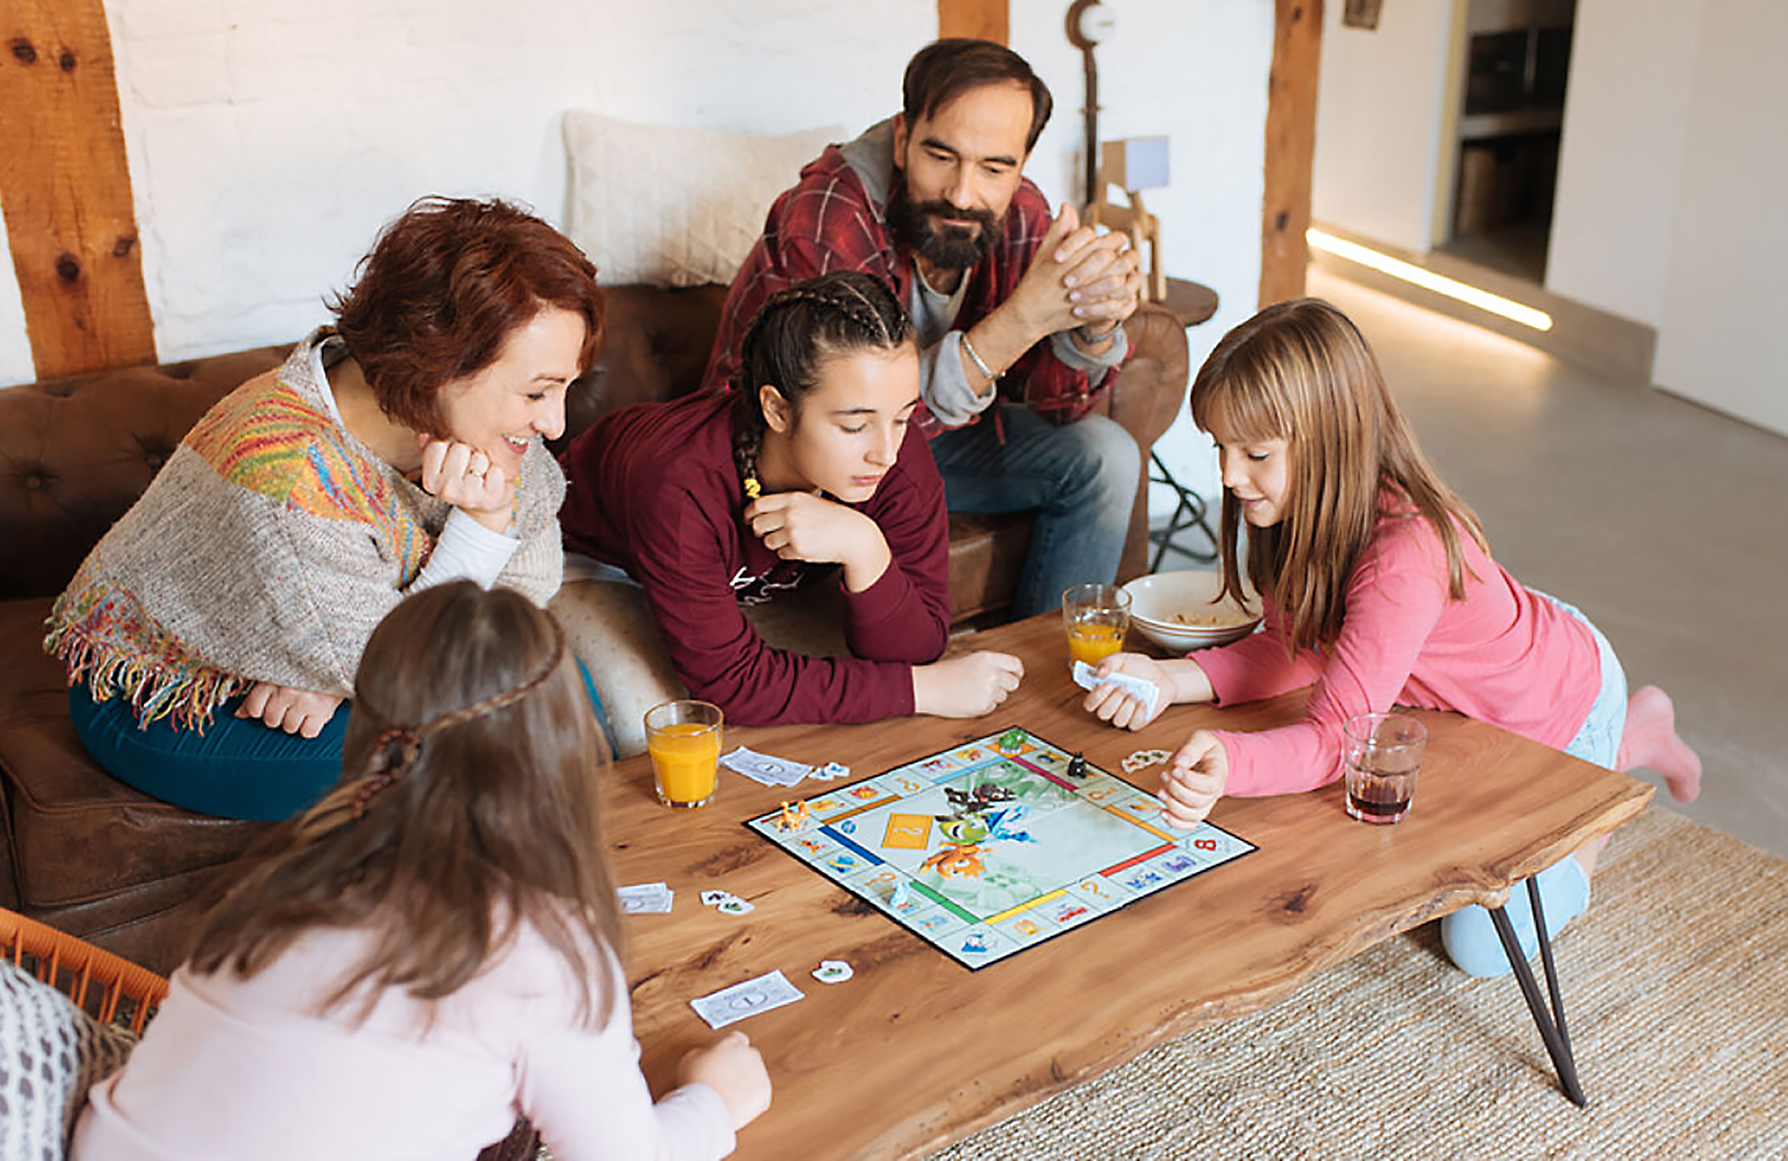 Los juegos de mesa animan a los niños a ser sociables, les permite comunicarse e
interactuar con total libertad y aprender a hacer amigos con facilidad. Foto Prensa Libre: Cortesía